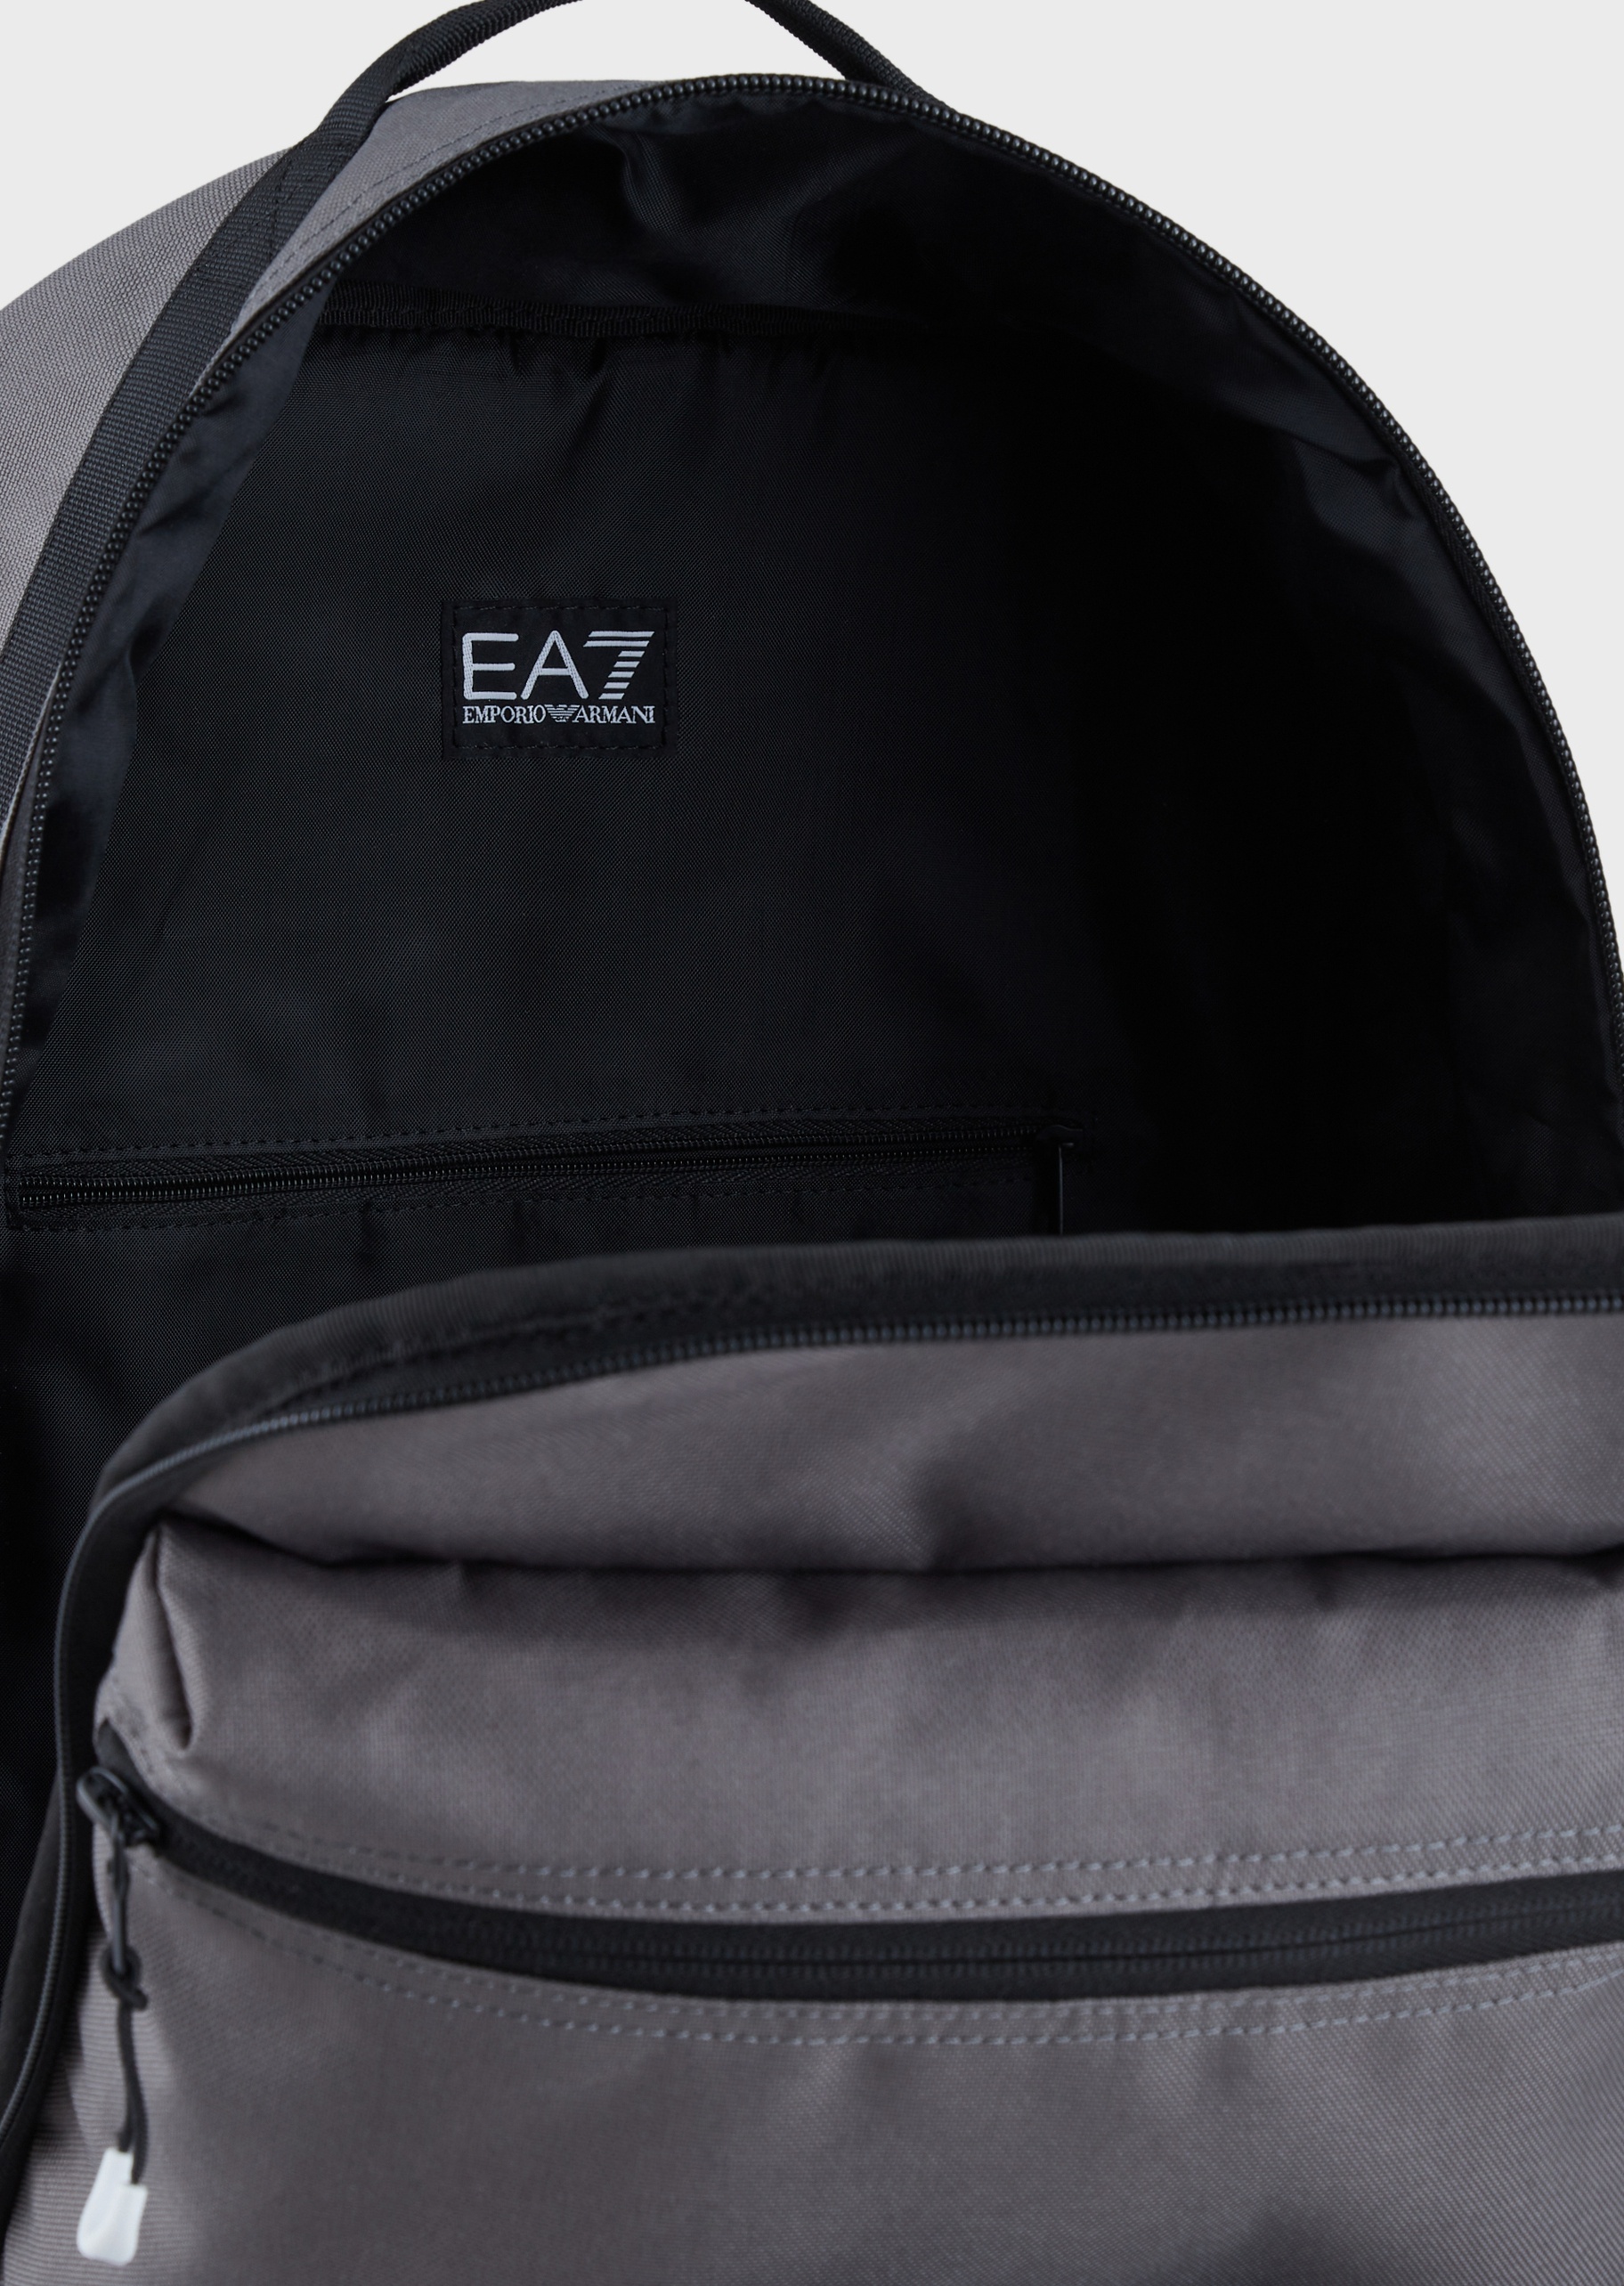 EA7 可持续系列男女拉链运动双肩包